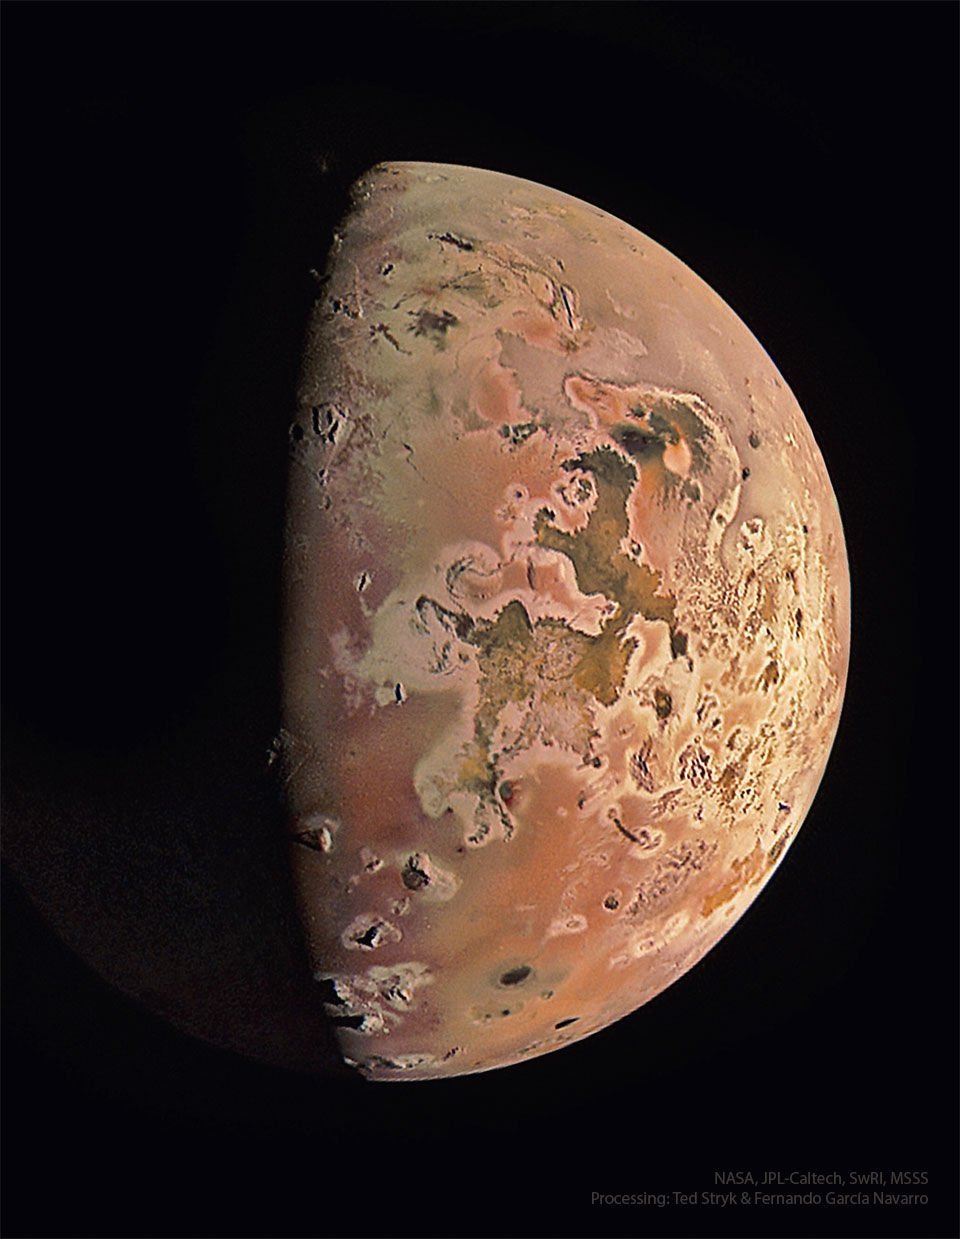 Les volcans de Io par Juno